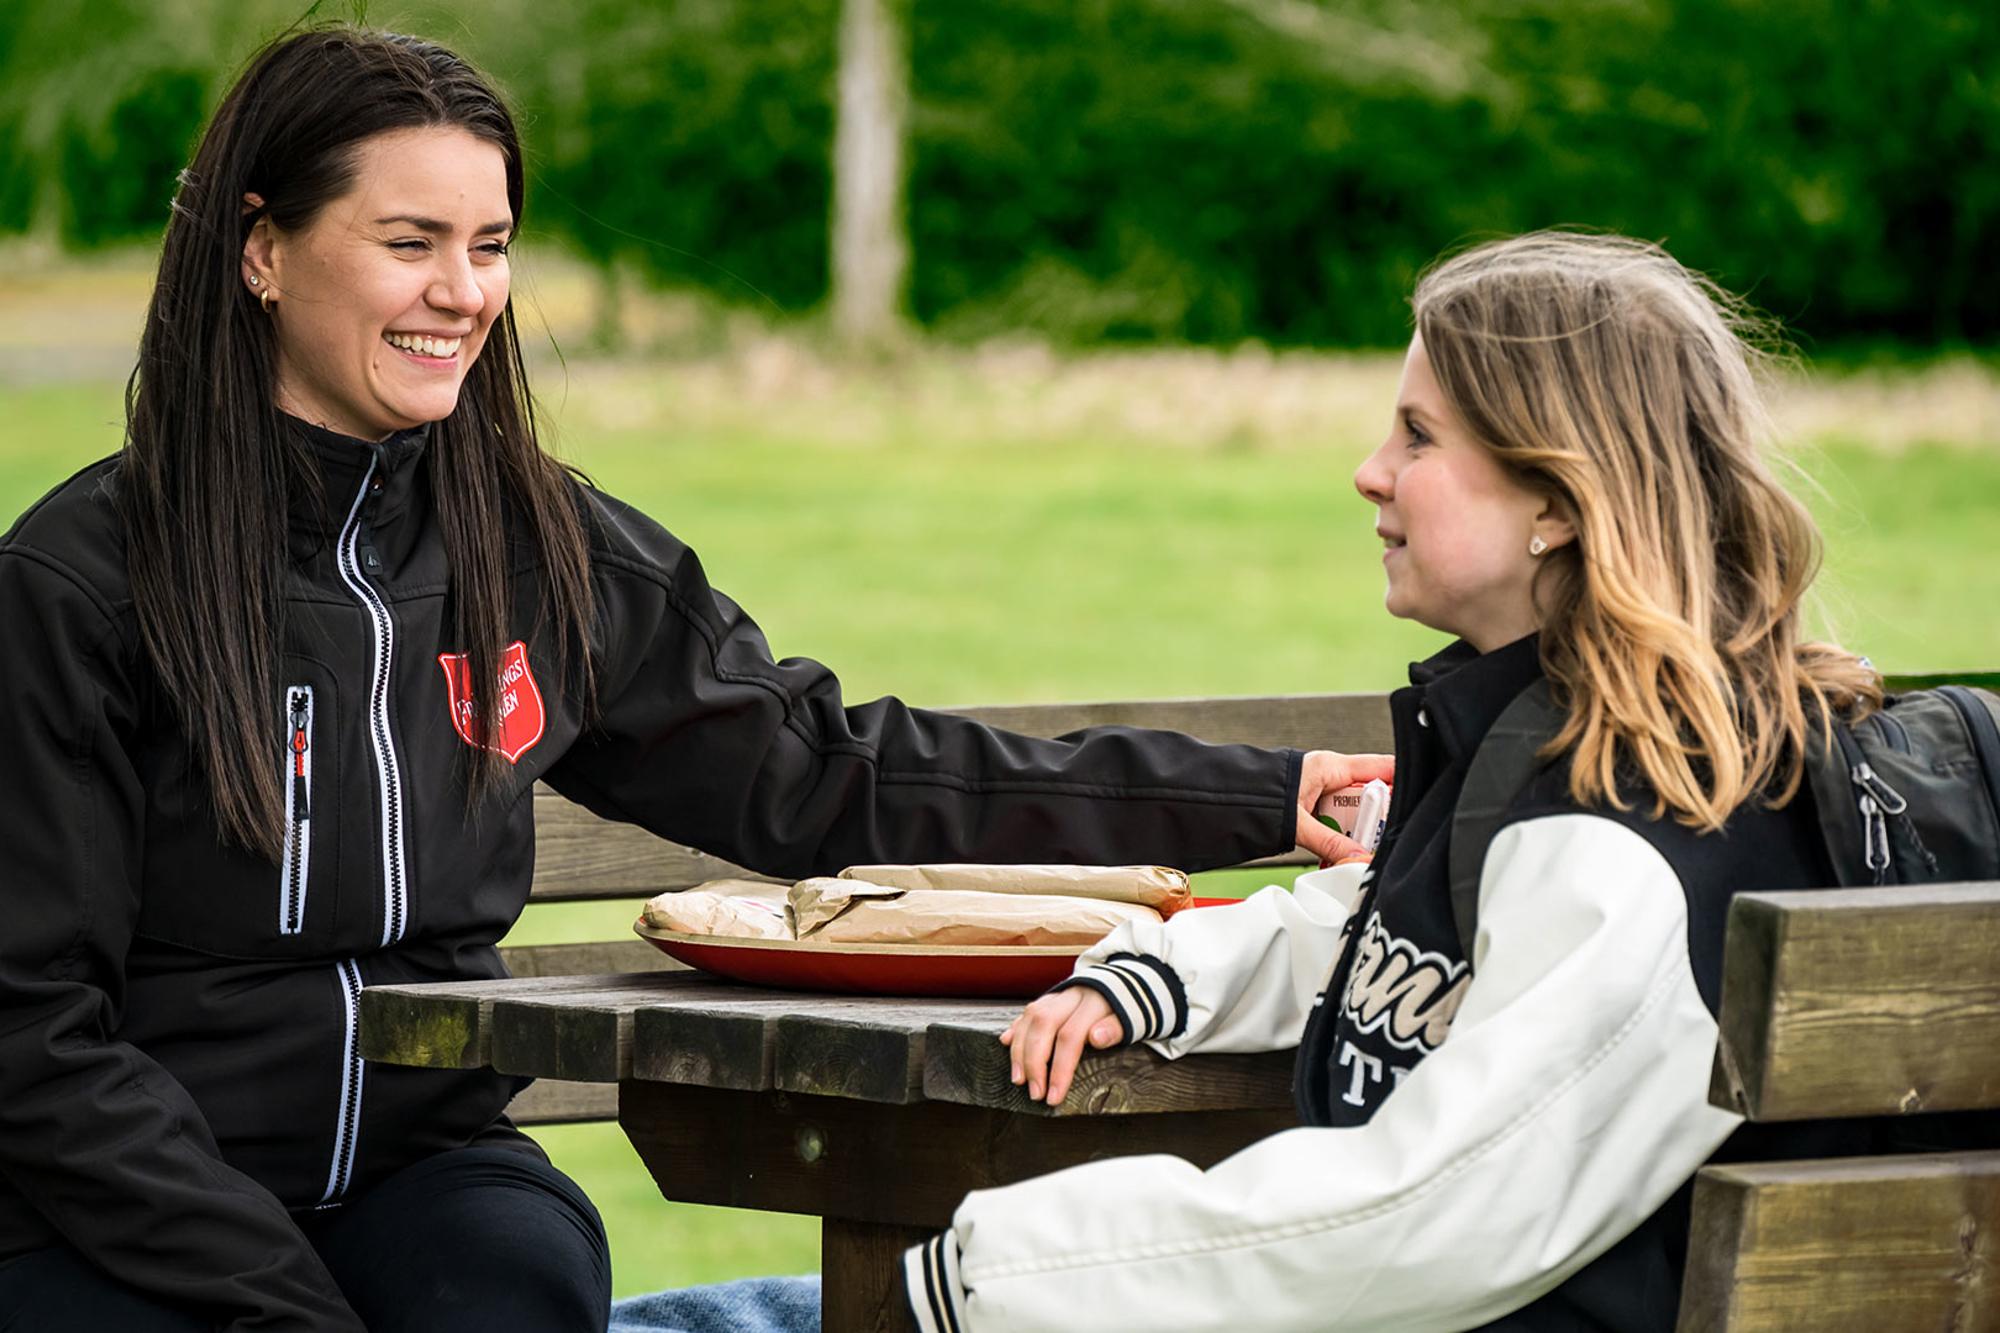 En ung flicka sitter vid ett picknickbord tillsammans med en glad kvinna som har Frälsningsarméns sköld på jackan. I bakgrunden syns ett grönområde.